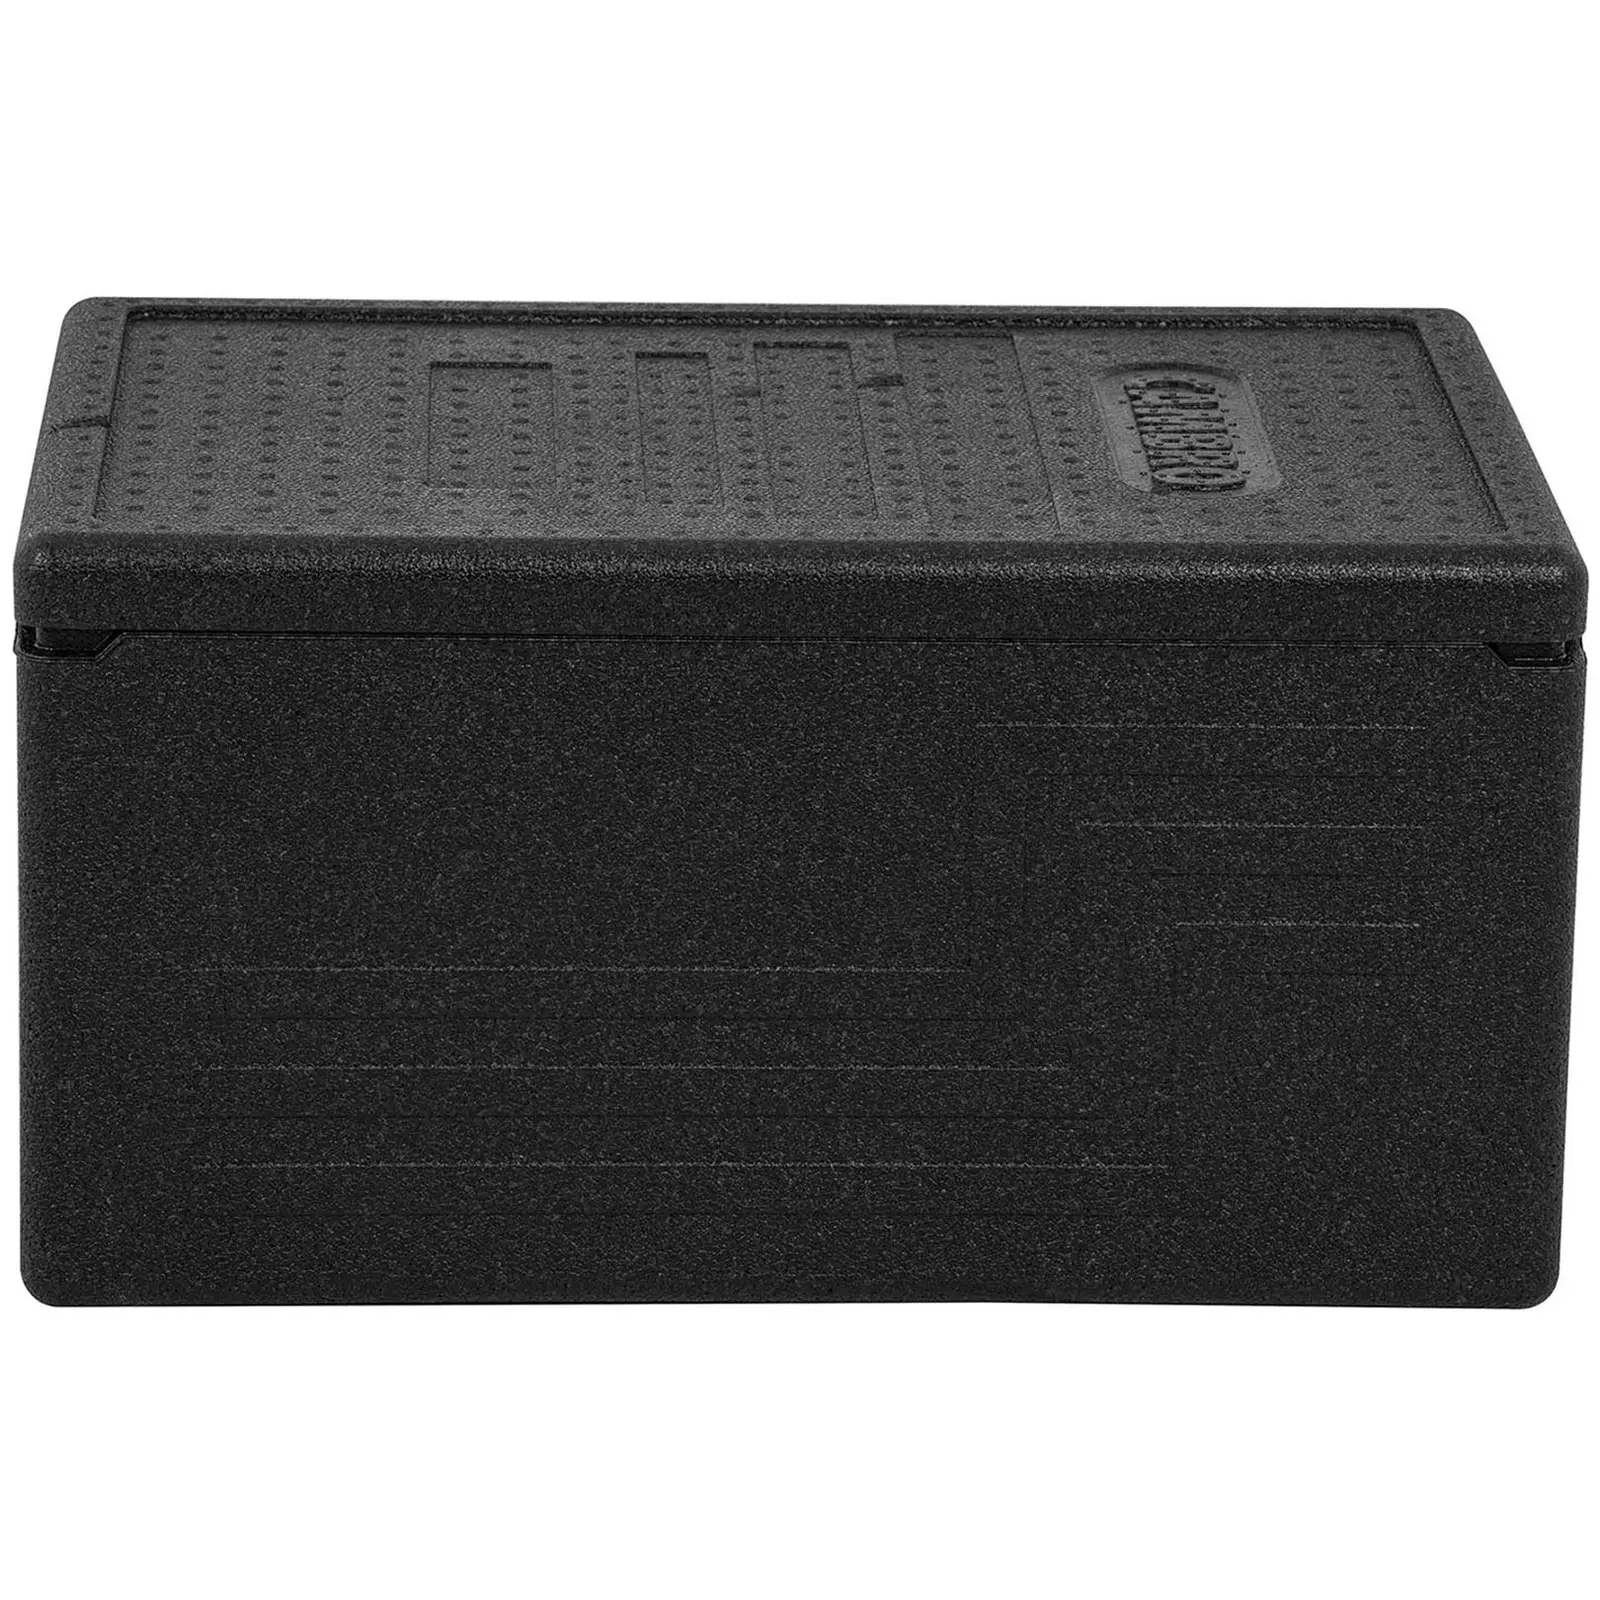 Termobox - GN nádoba 1/1 (hloubka 20 cm) - báze